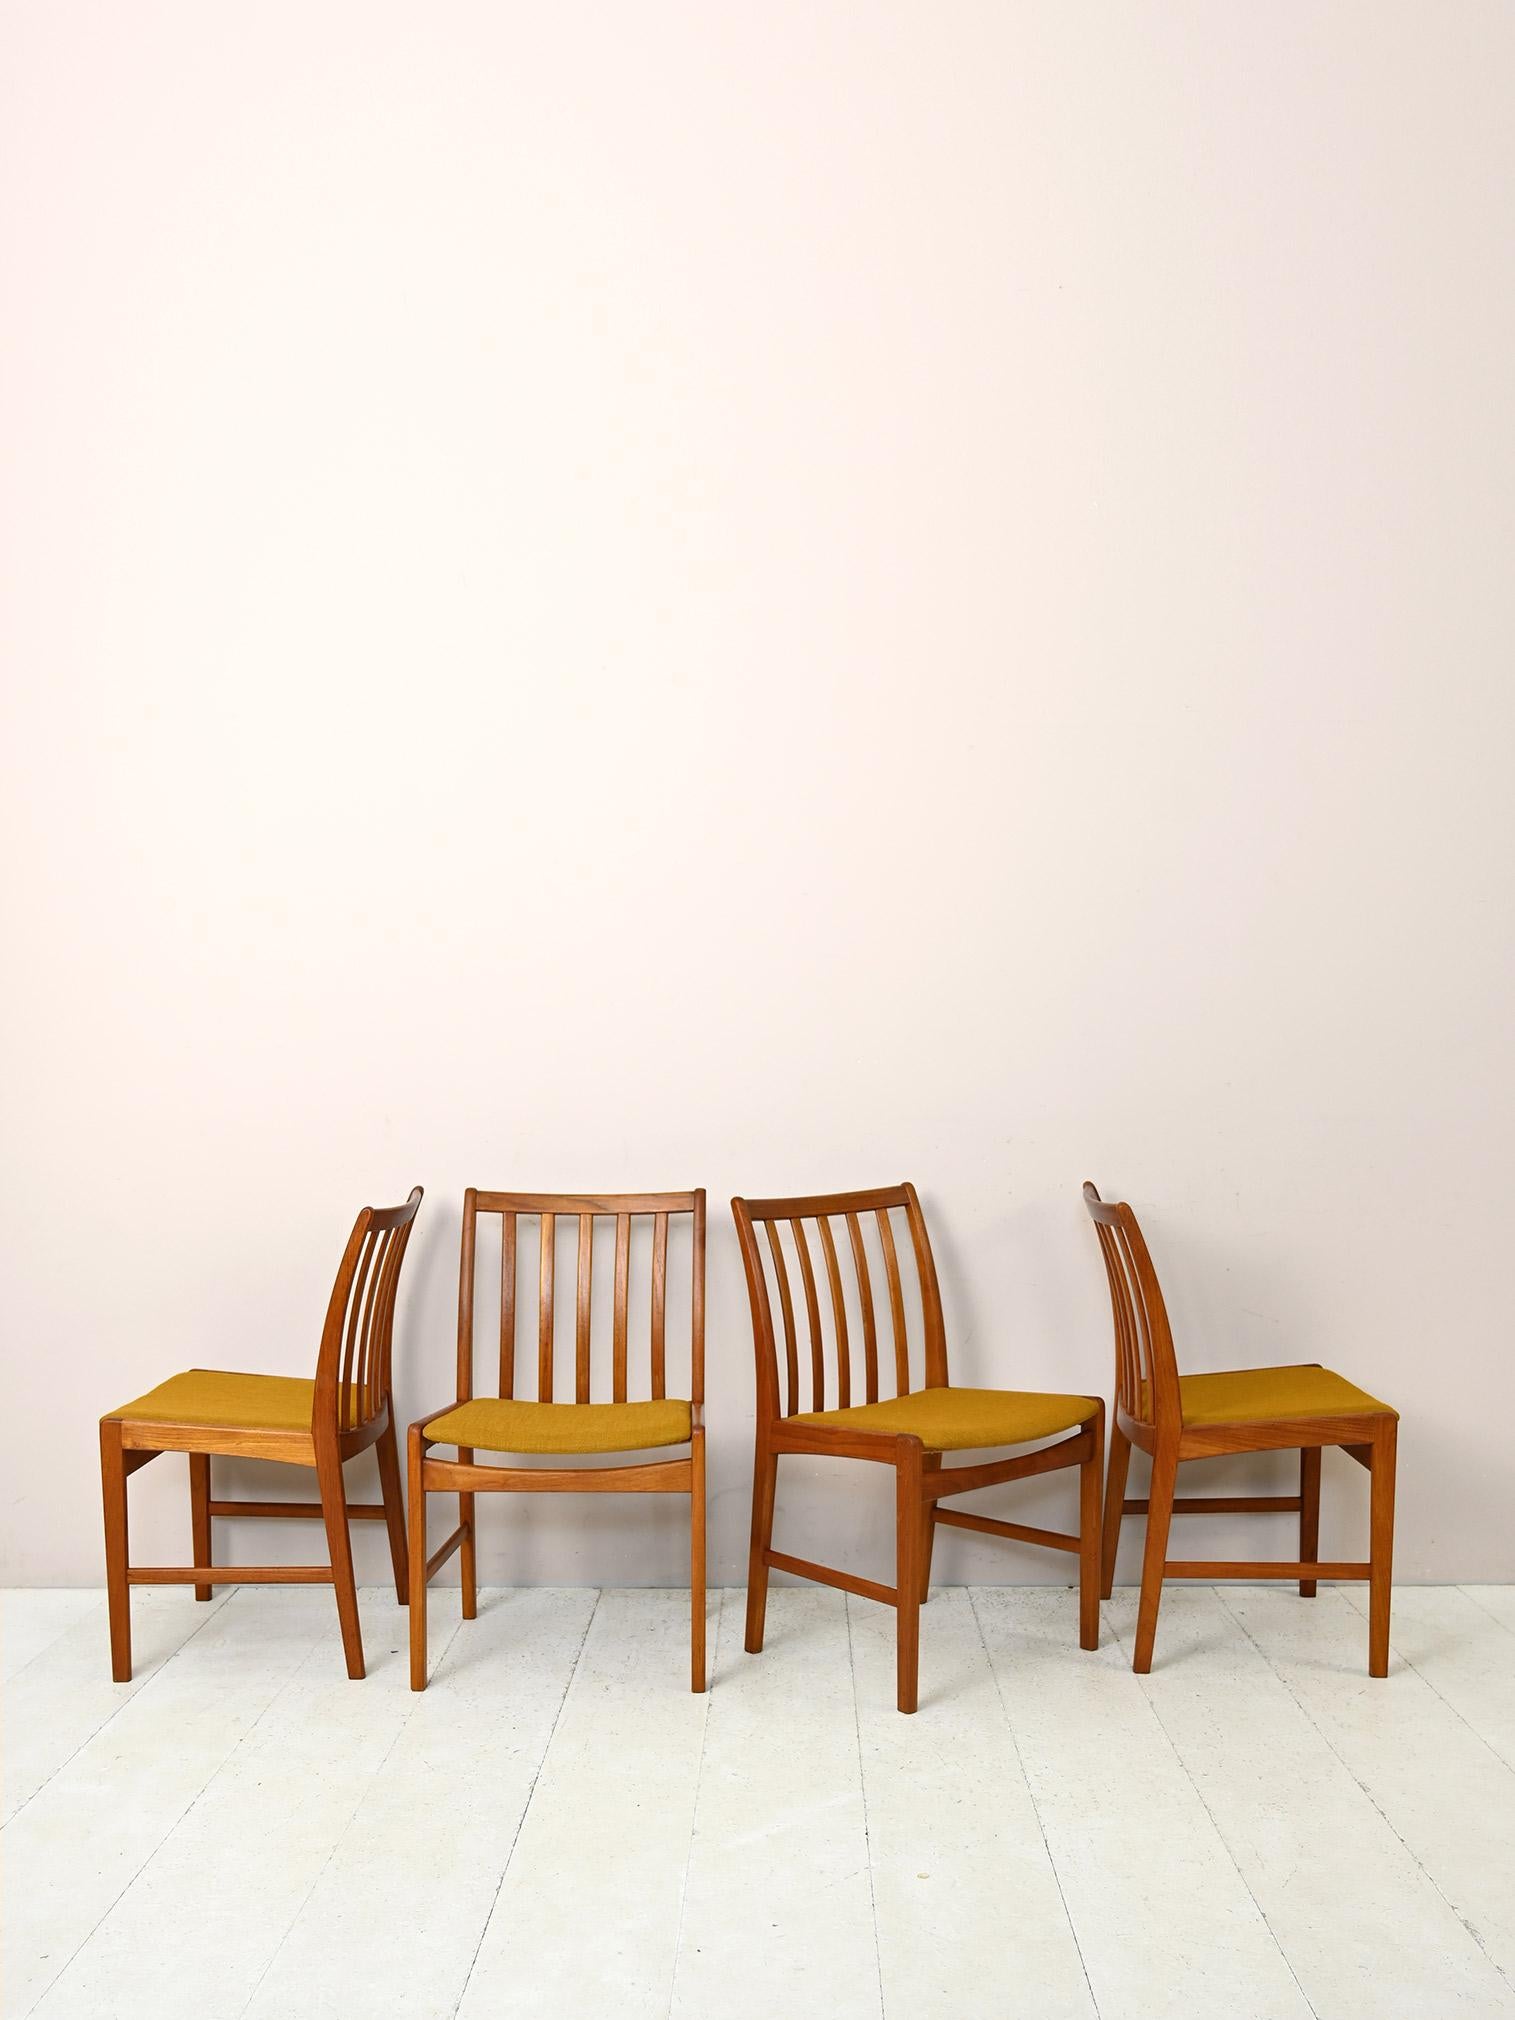 Satz von 4 originalen Stühlen aus den 1960er Jahren.

Bestehend aus einem Gestell aus Teakholz und einer leicht gepolsterten Sitzfläche, die mit ockerfarbenem Stoff überzogen ist.
Die modernen und eleganten Linien erinnern an den skandinavischen